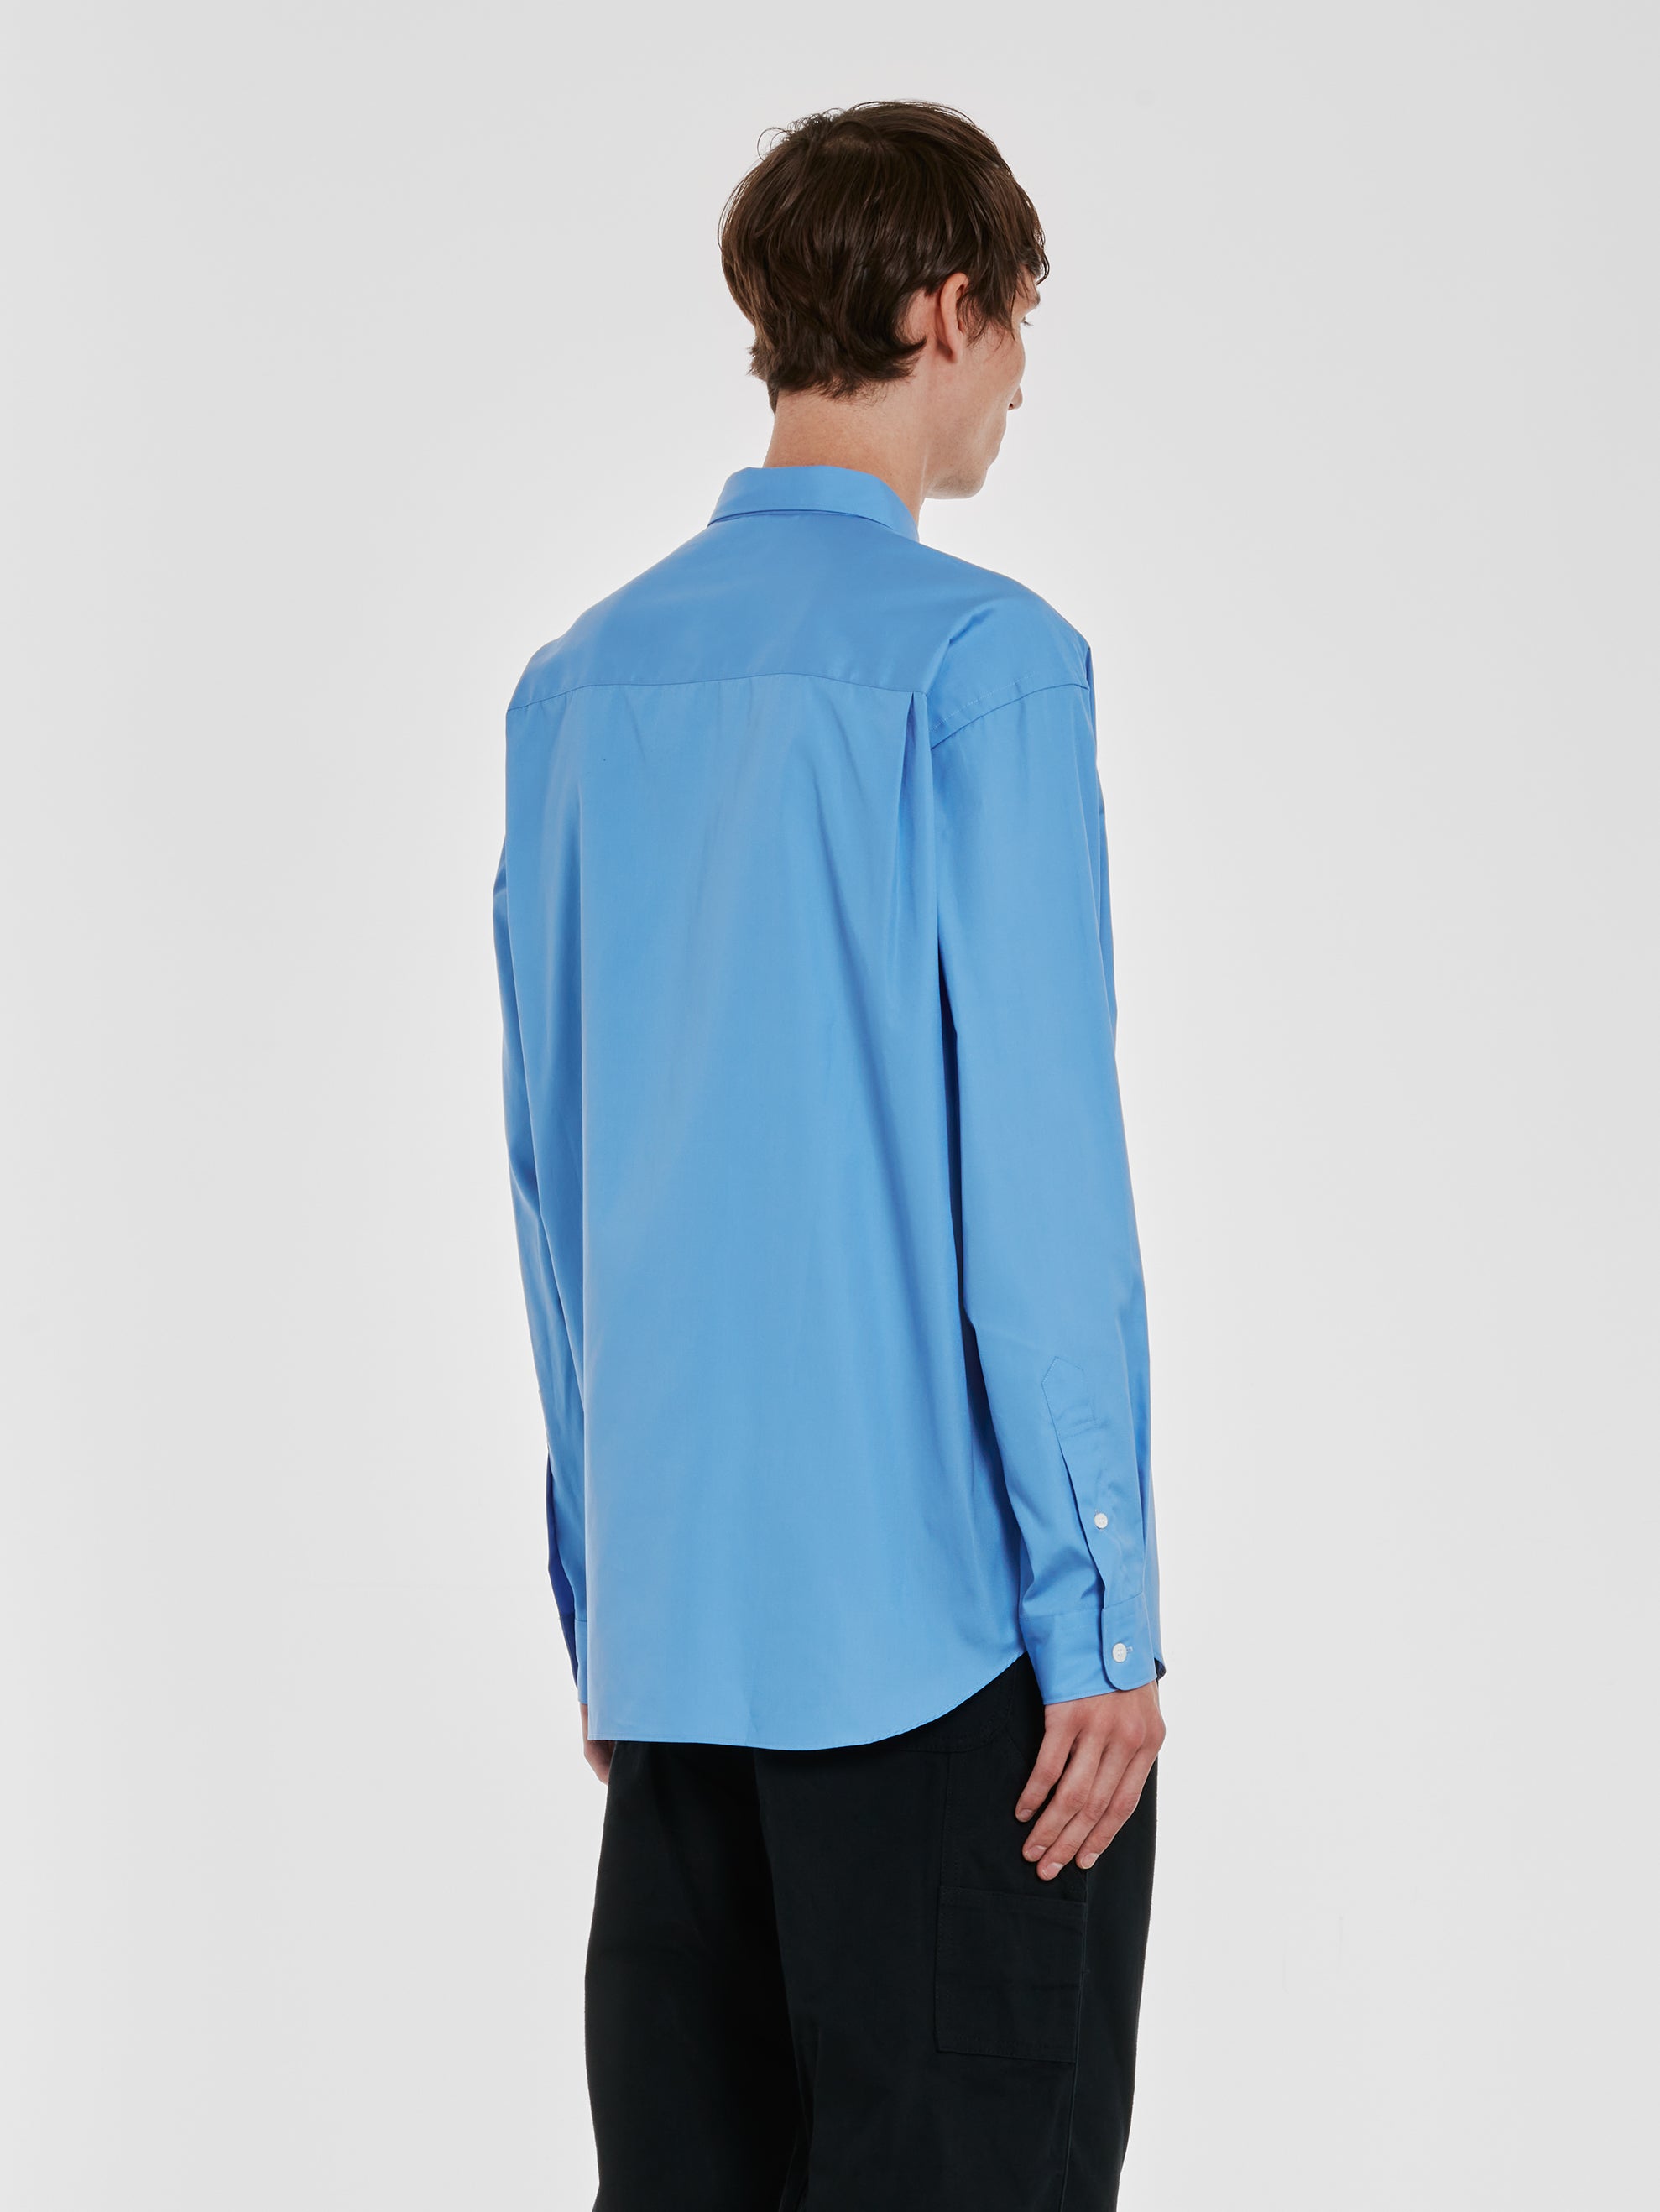 Comme des Garçons Homme - Men’s Cotton Shirt - (Light Blue) view 3